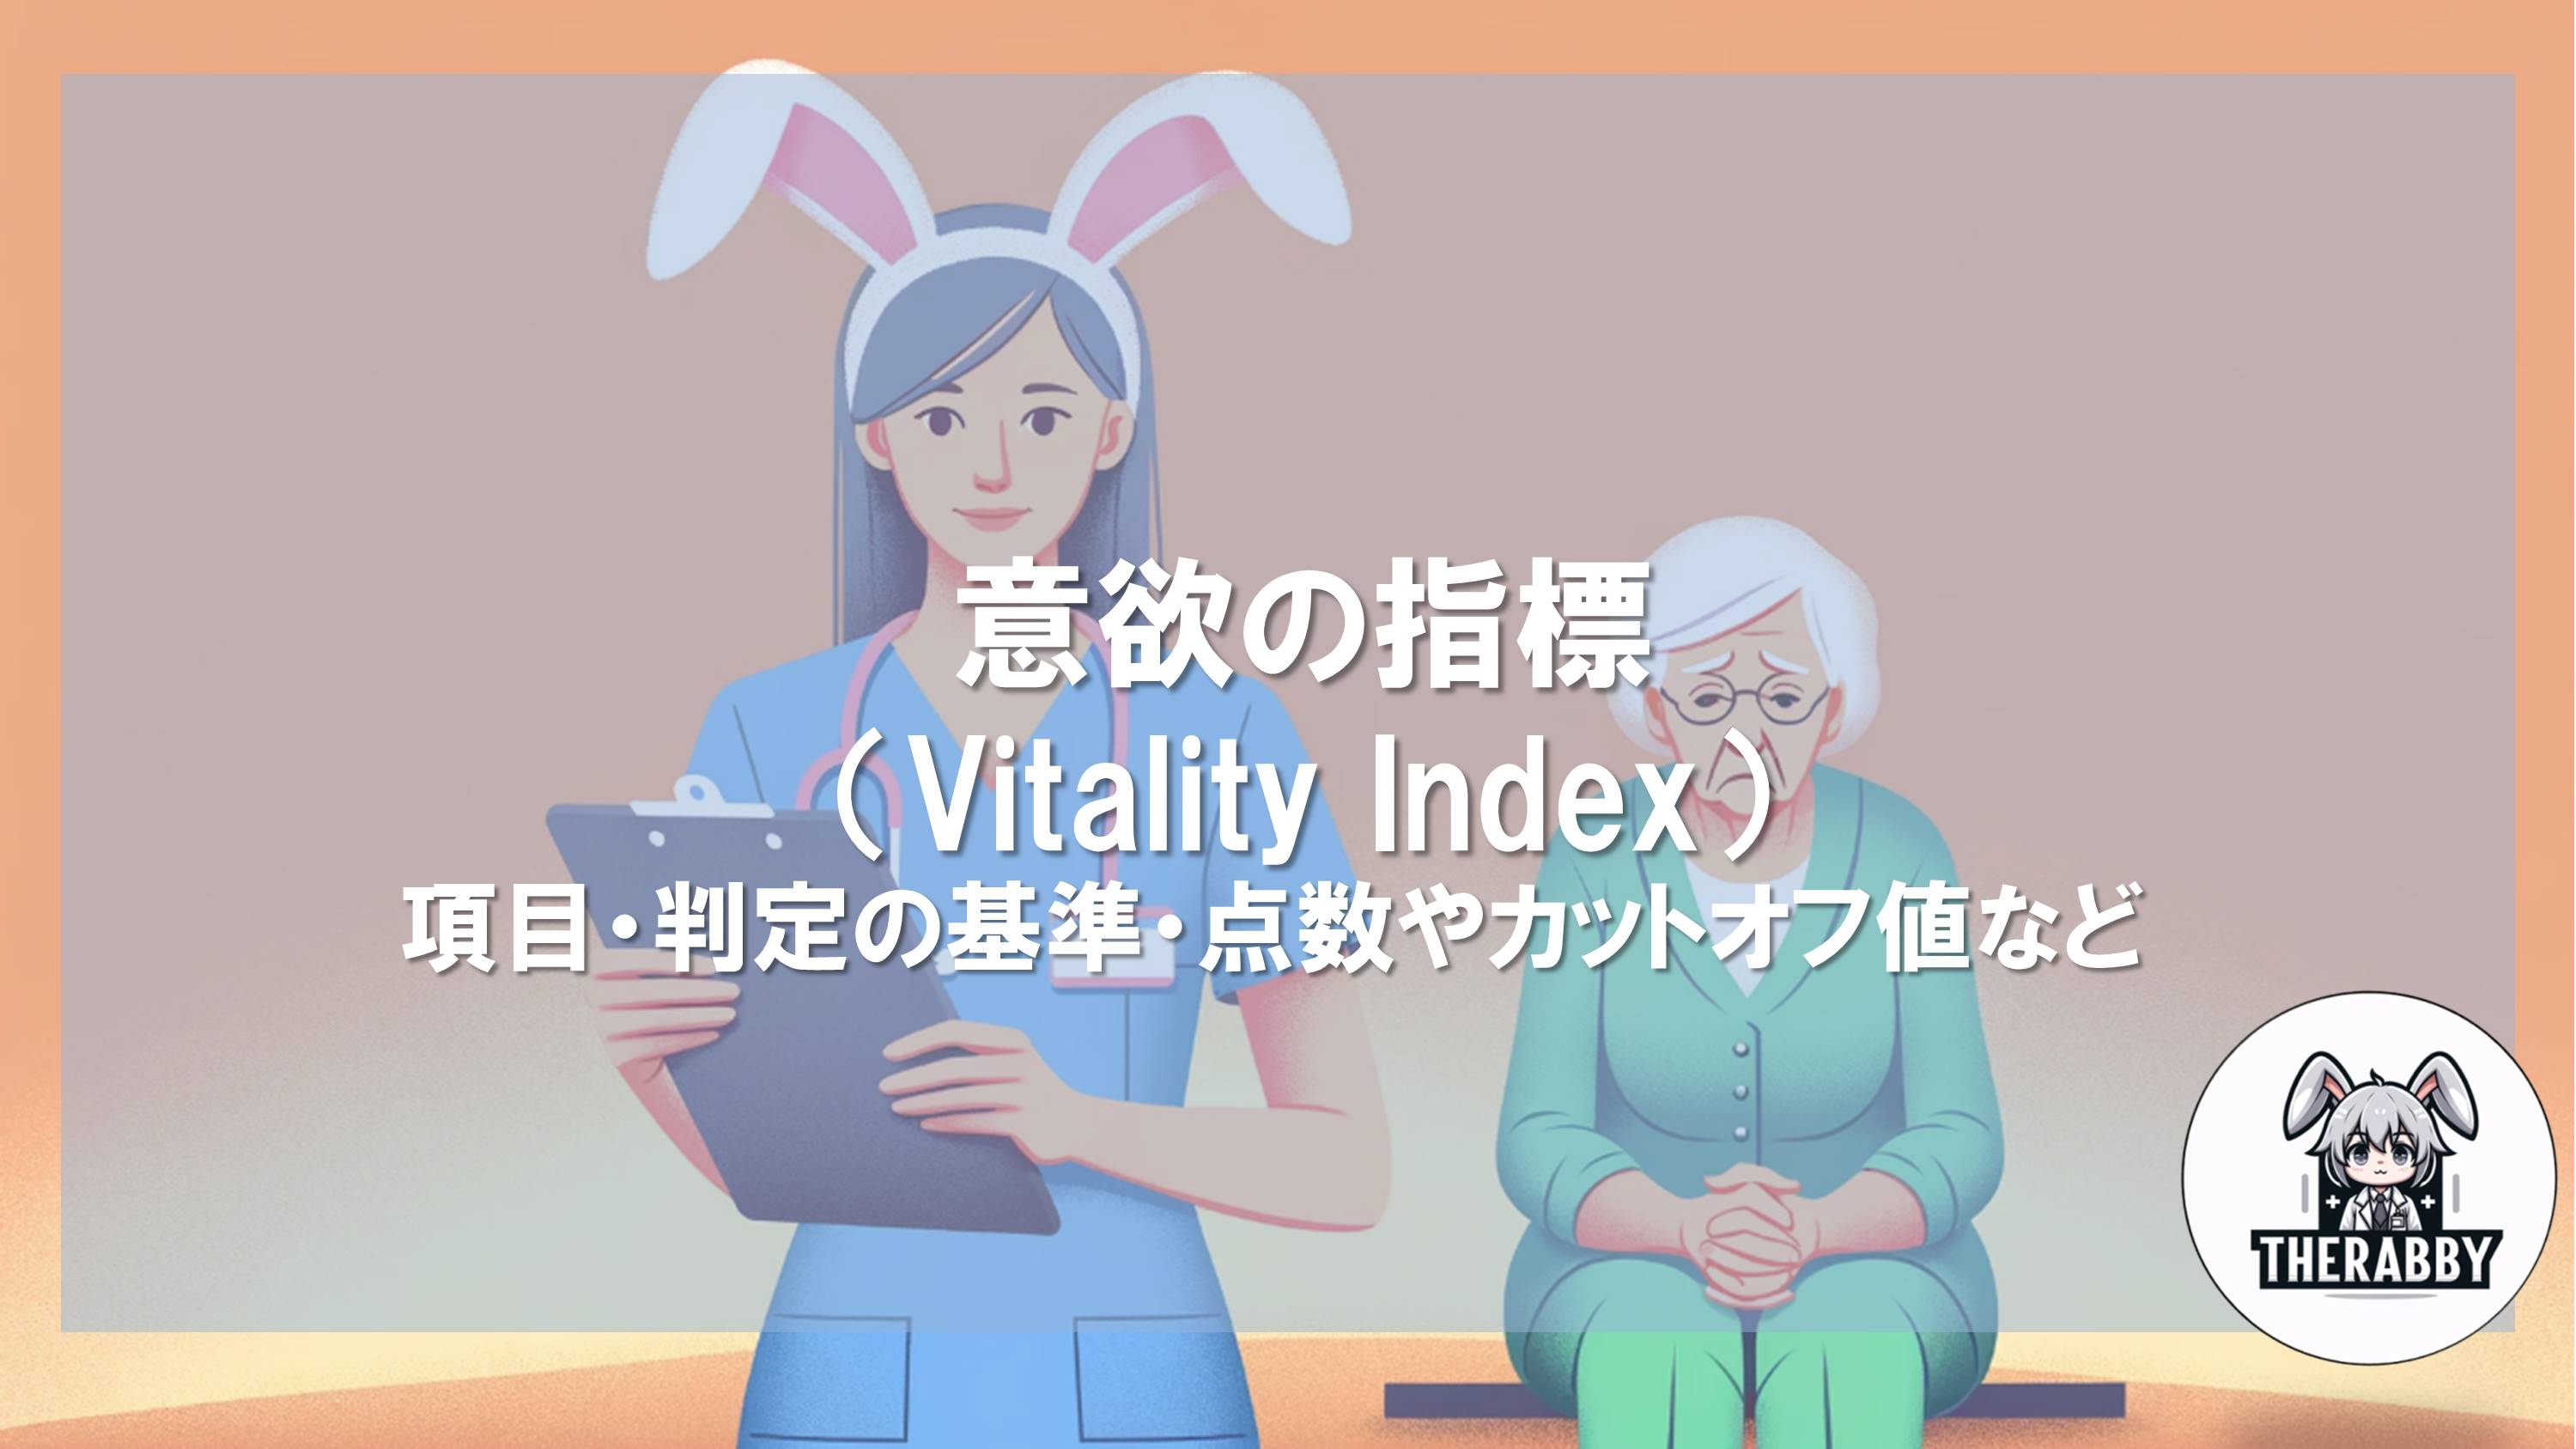 意欲の指標（Vitality Index）- 項目・判定の基準・点数やカットオフ値・寝たきり高齢者に対しての目的など